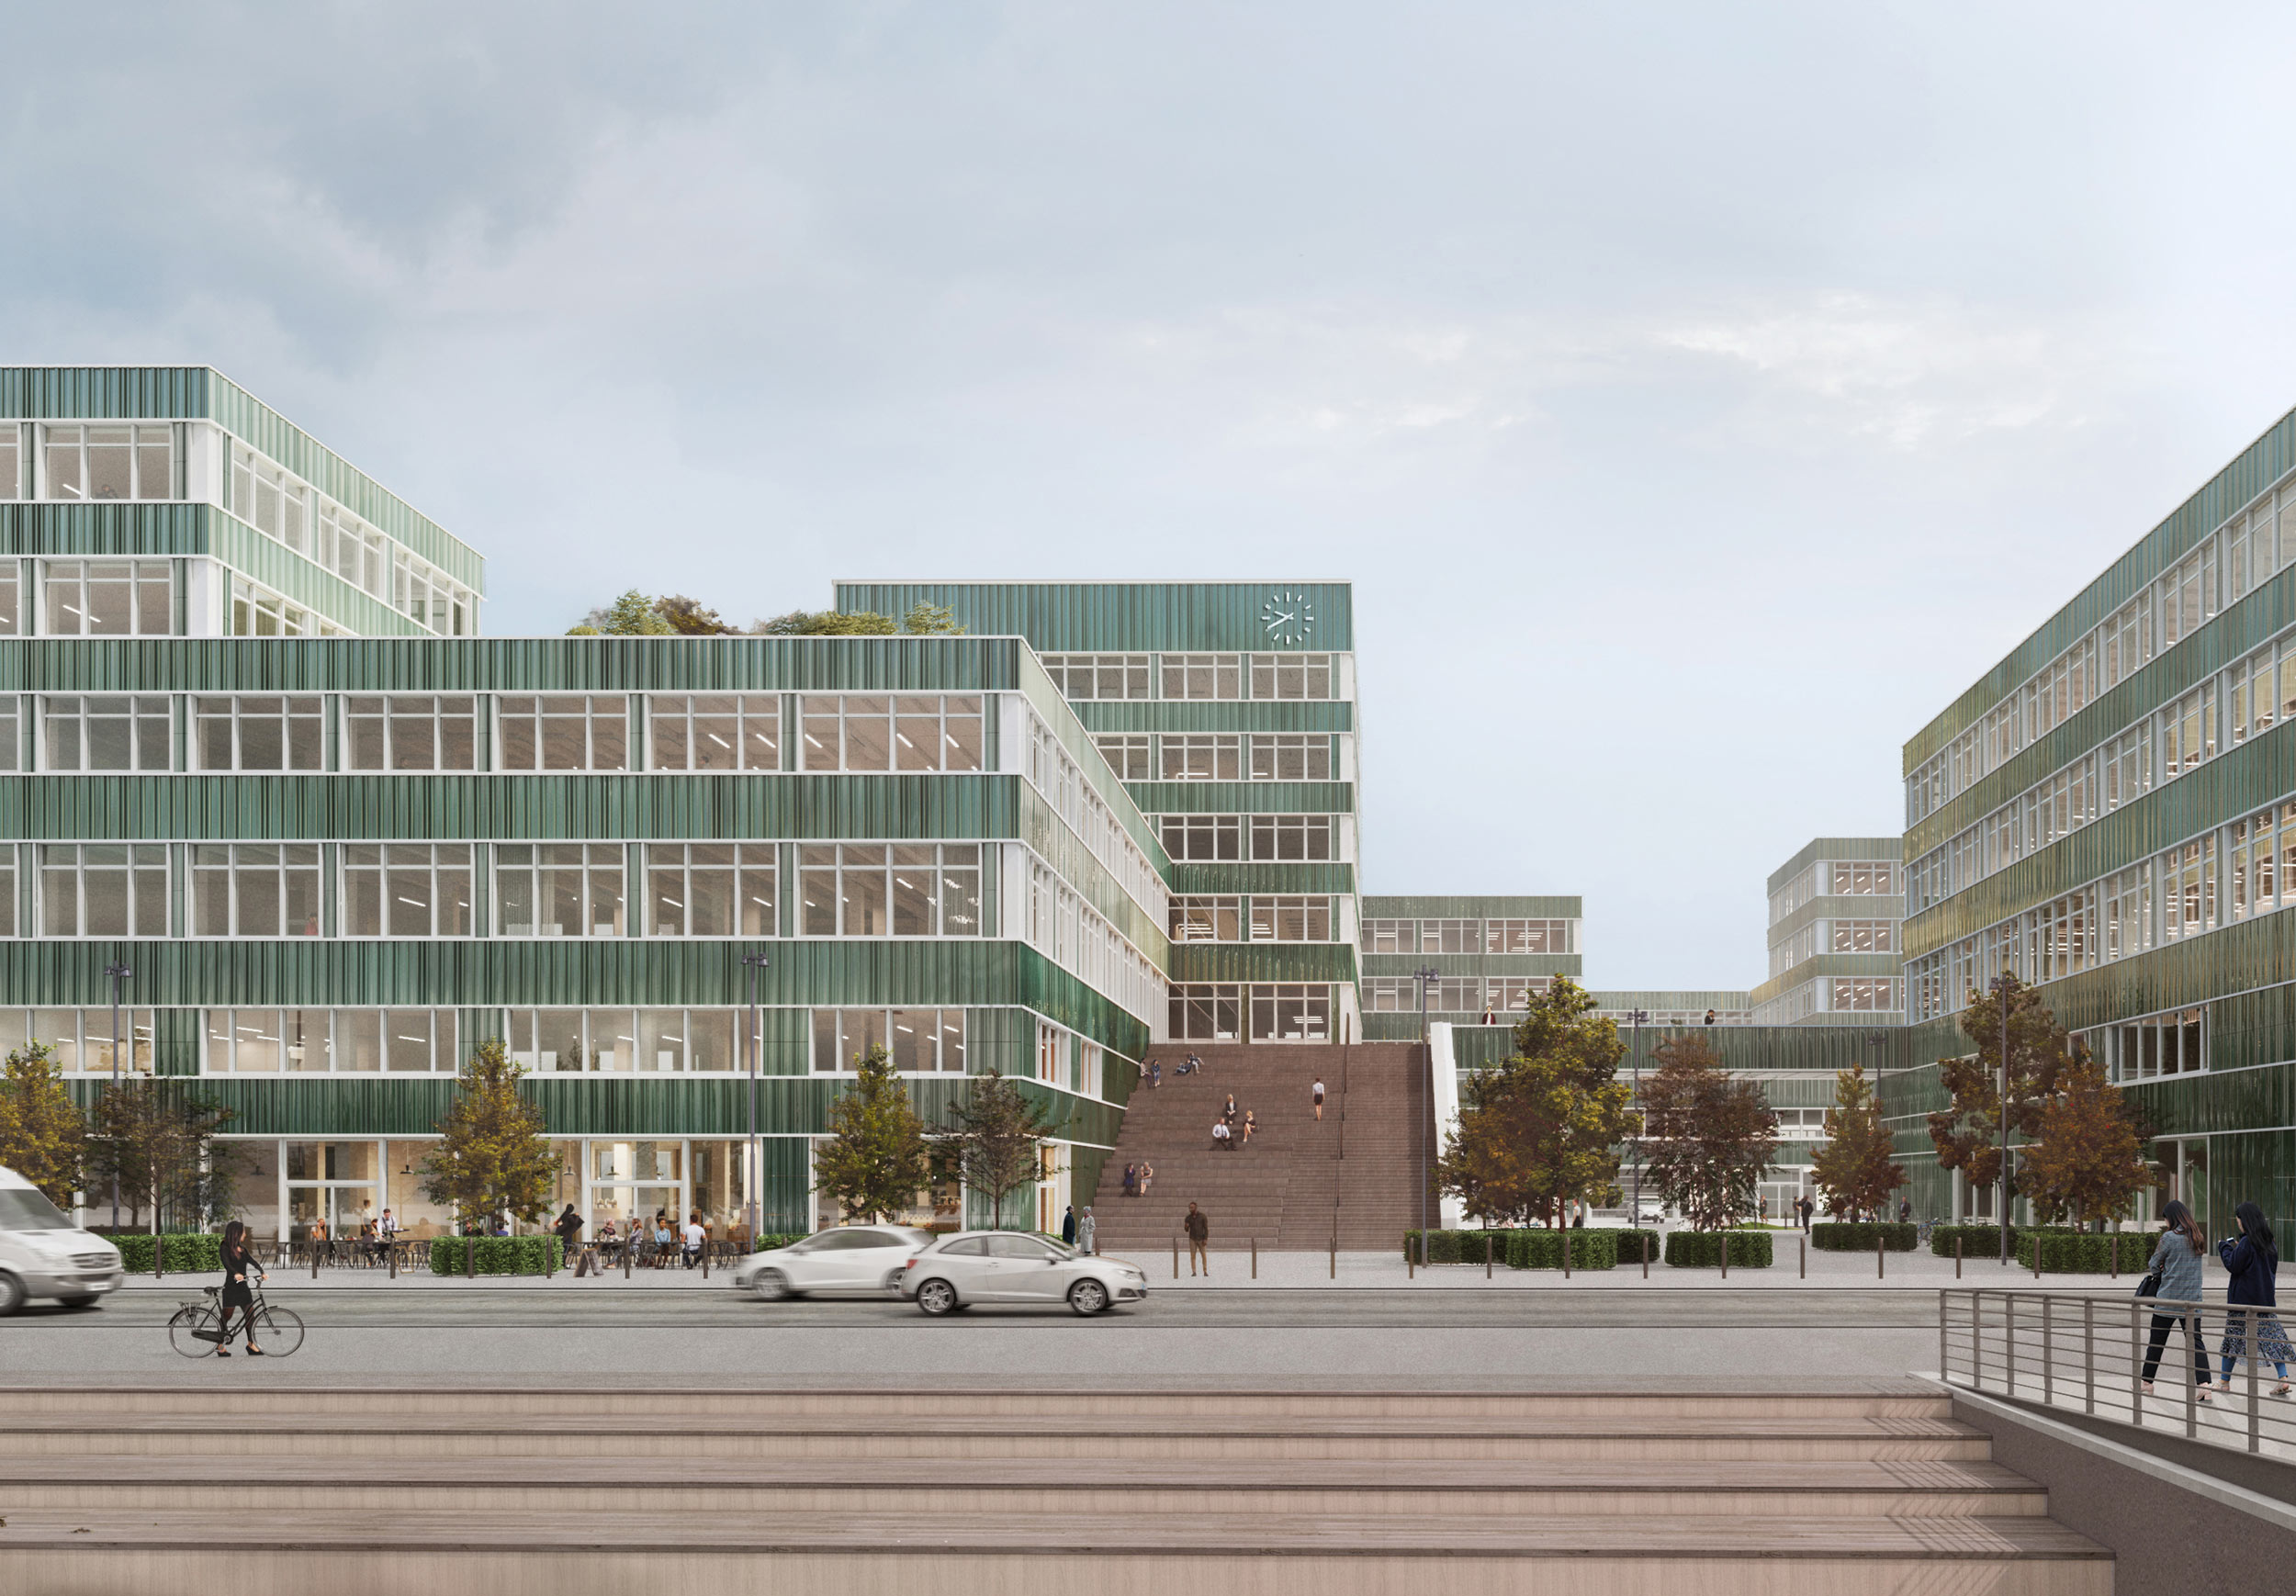 Büro und Industrie Campus "Berlin Decks" vom Ufer aus gesehen